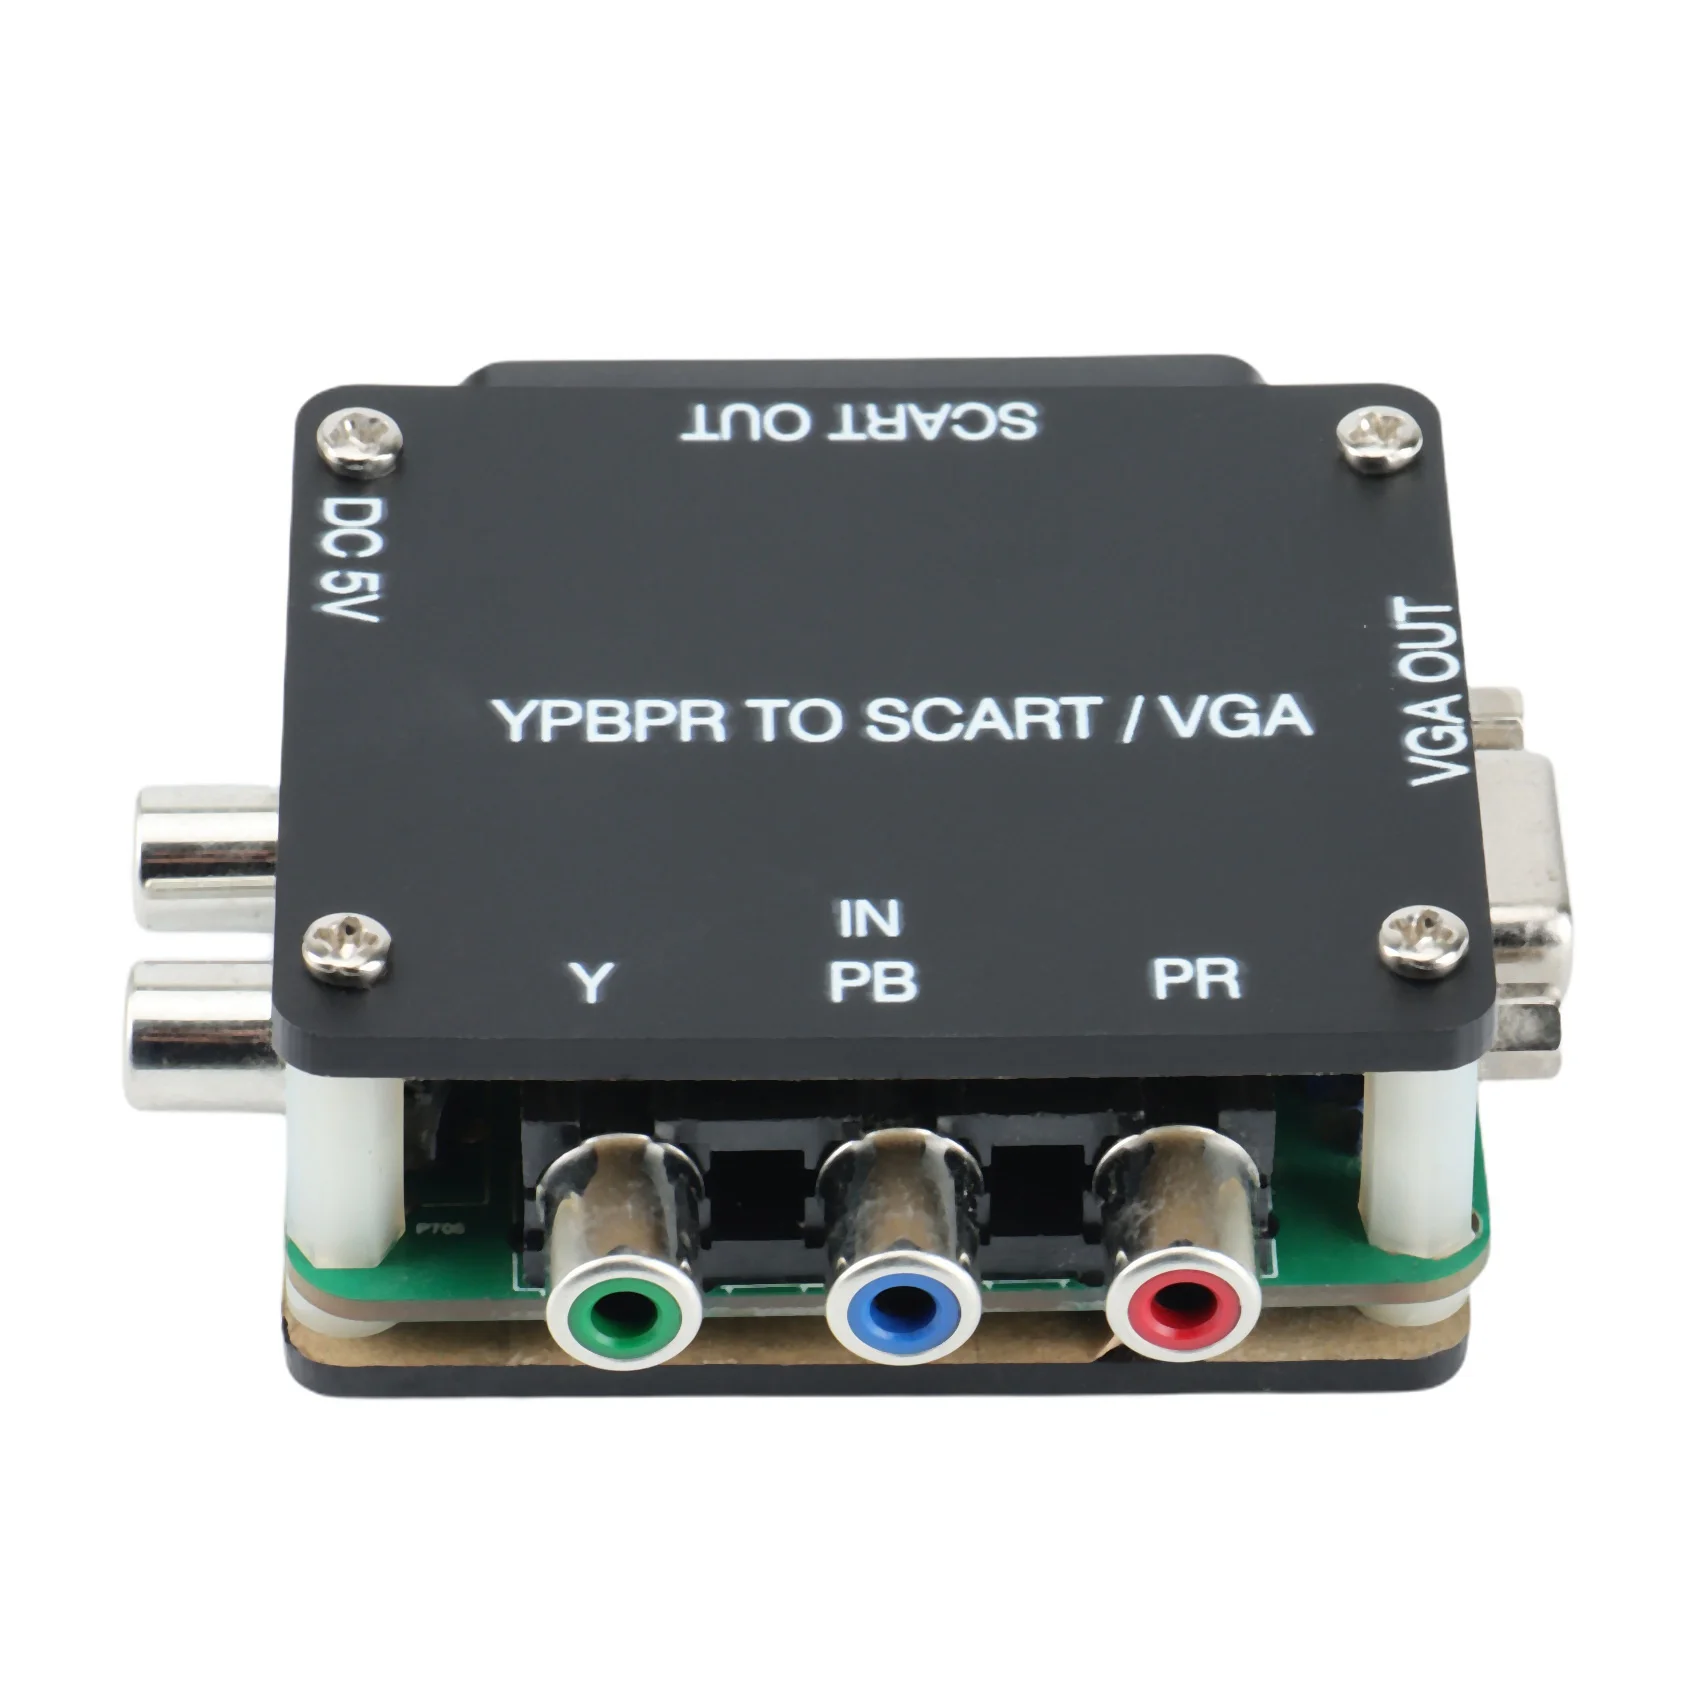 

YUV К RGBS YPBPR к SCART YPBPR к VGA-компоненту трансформатор игровой консоли, RGBS к компоненту цветовой разницы